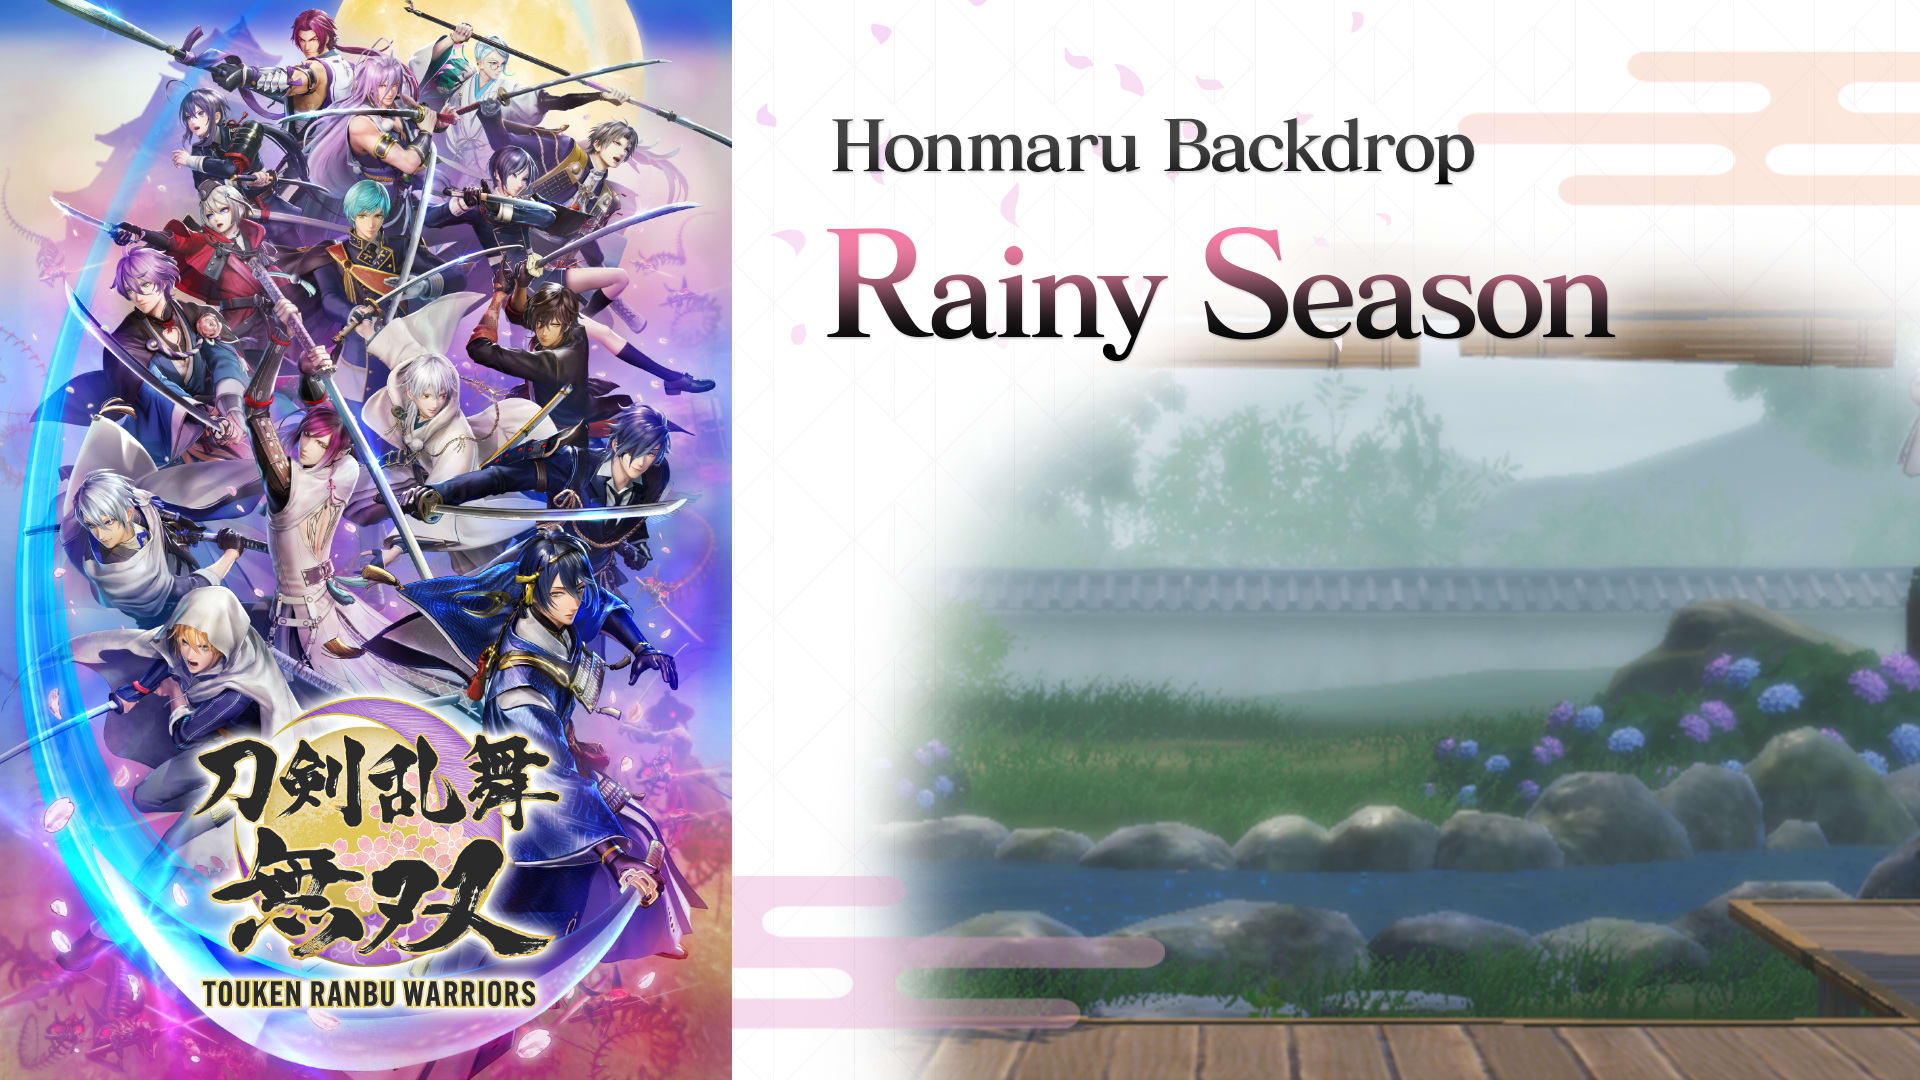 Honmaru Backdrop "Rainy Season"